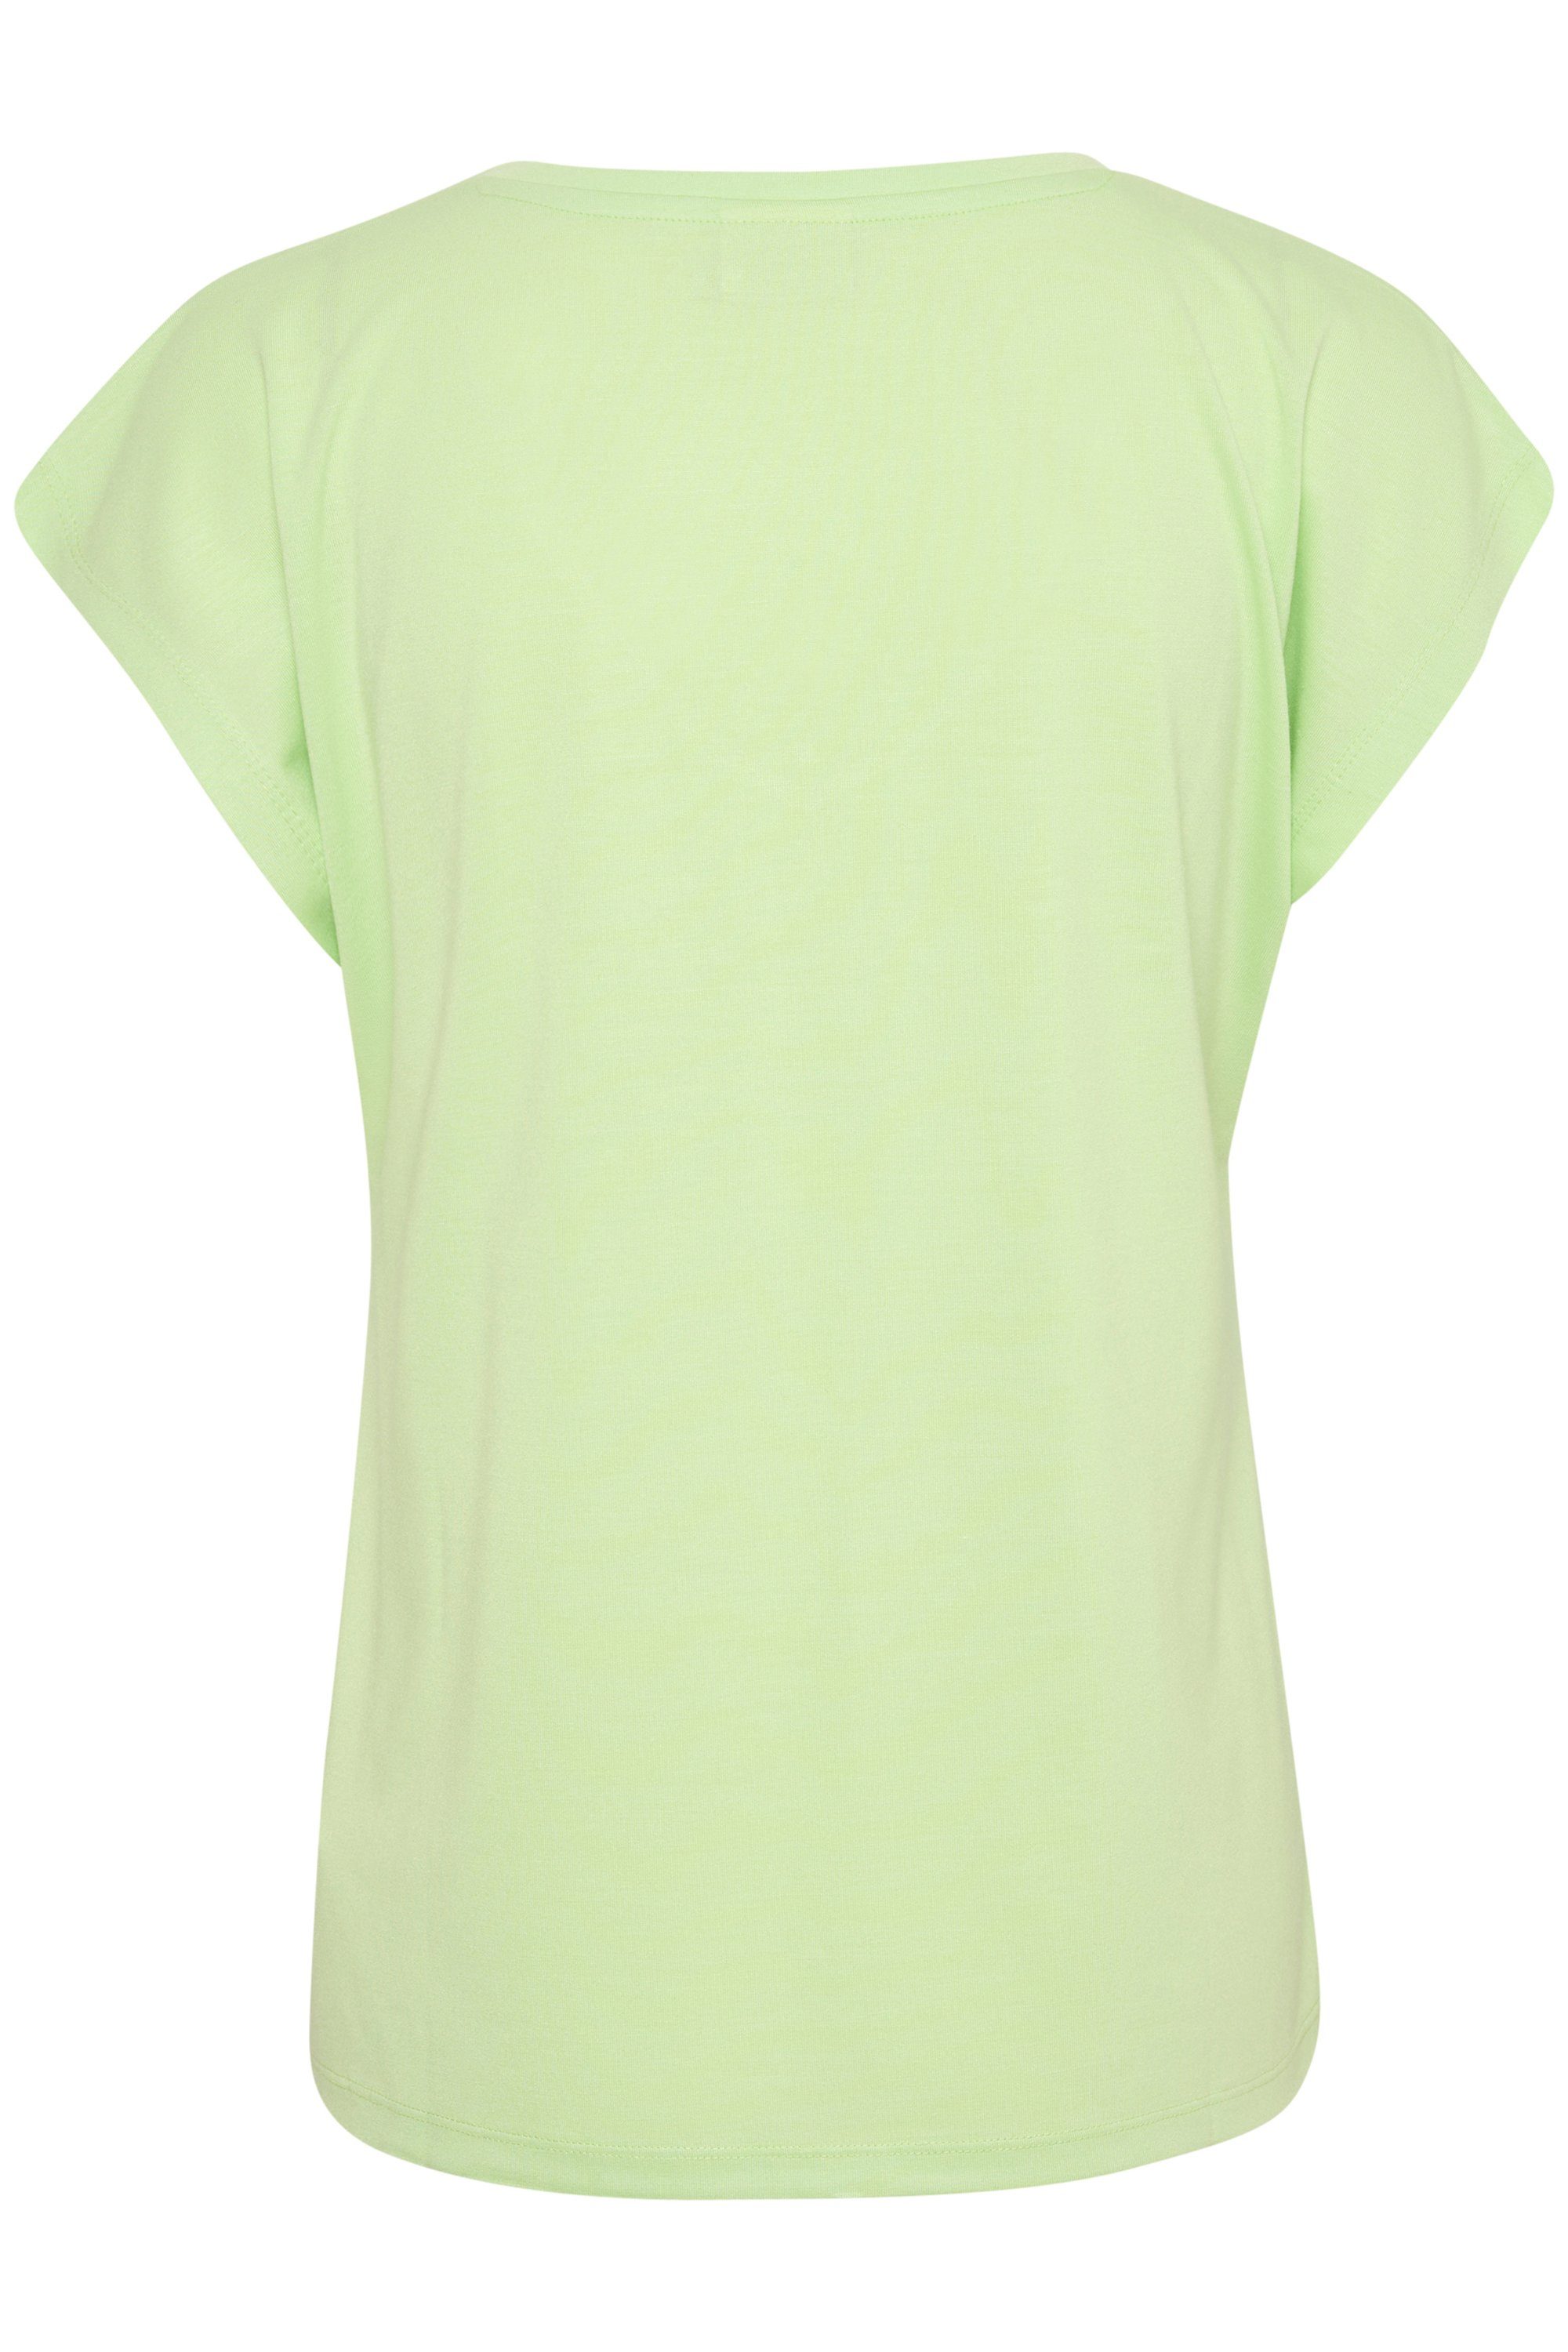 KAlise Paradise Green KAFFE T-shirt T-Shirt SS